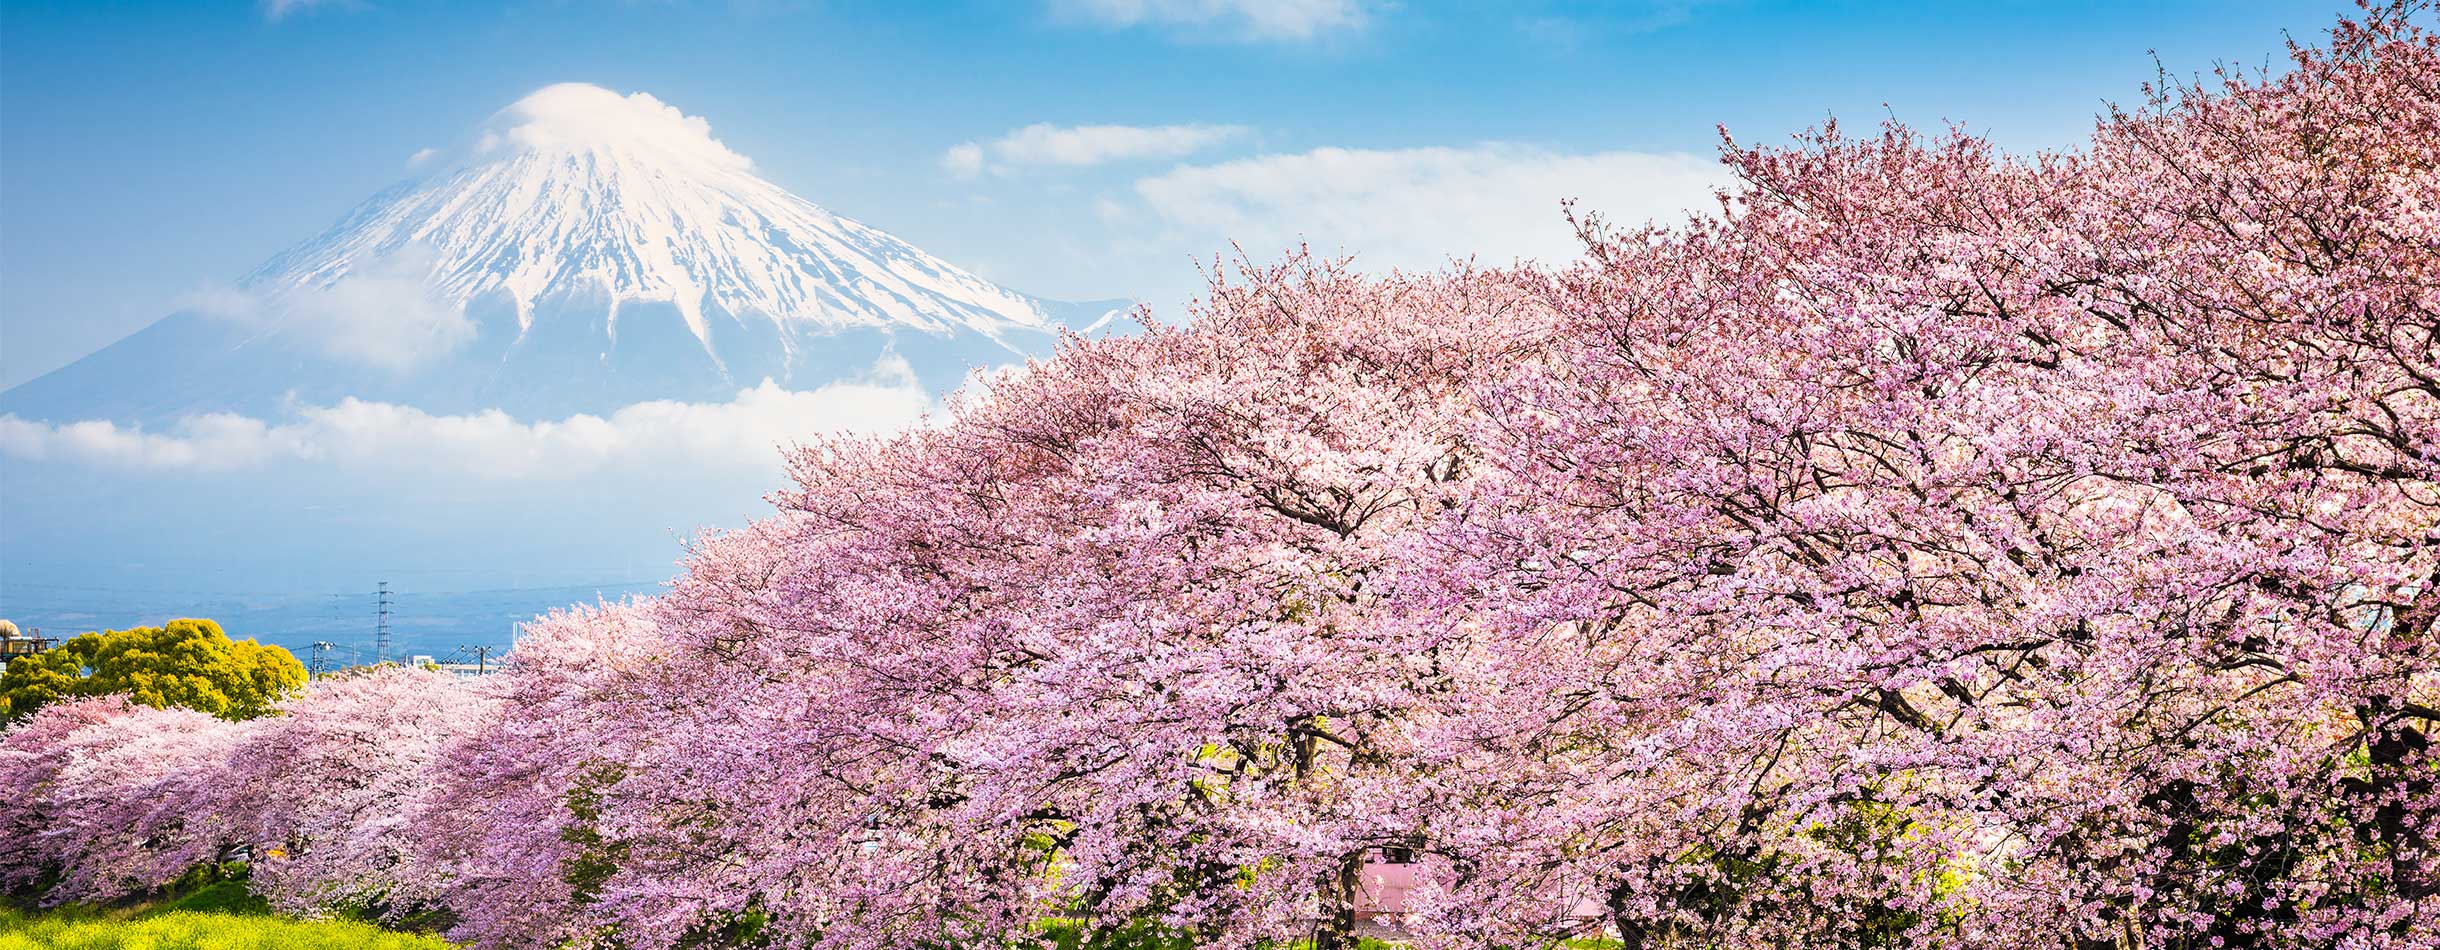 Mount Fuji, Japan spring landscape.